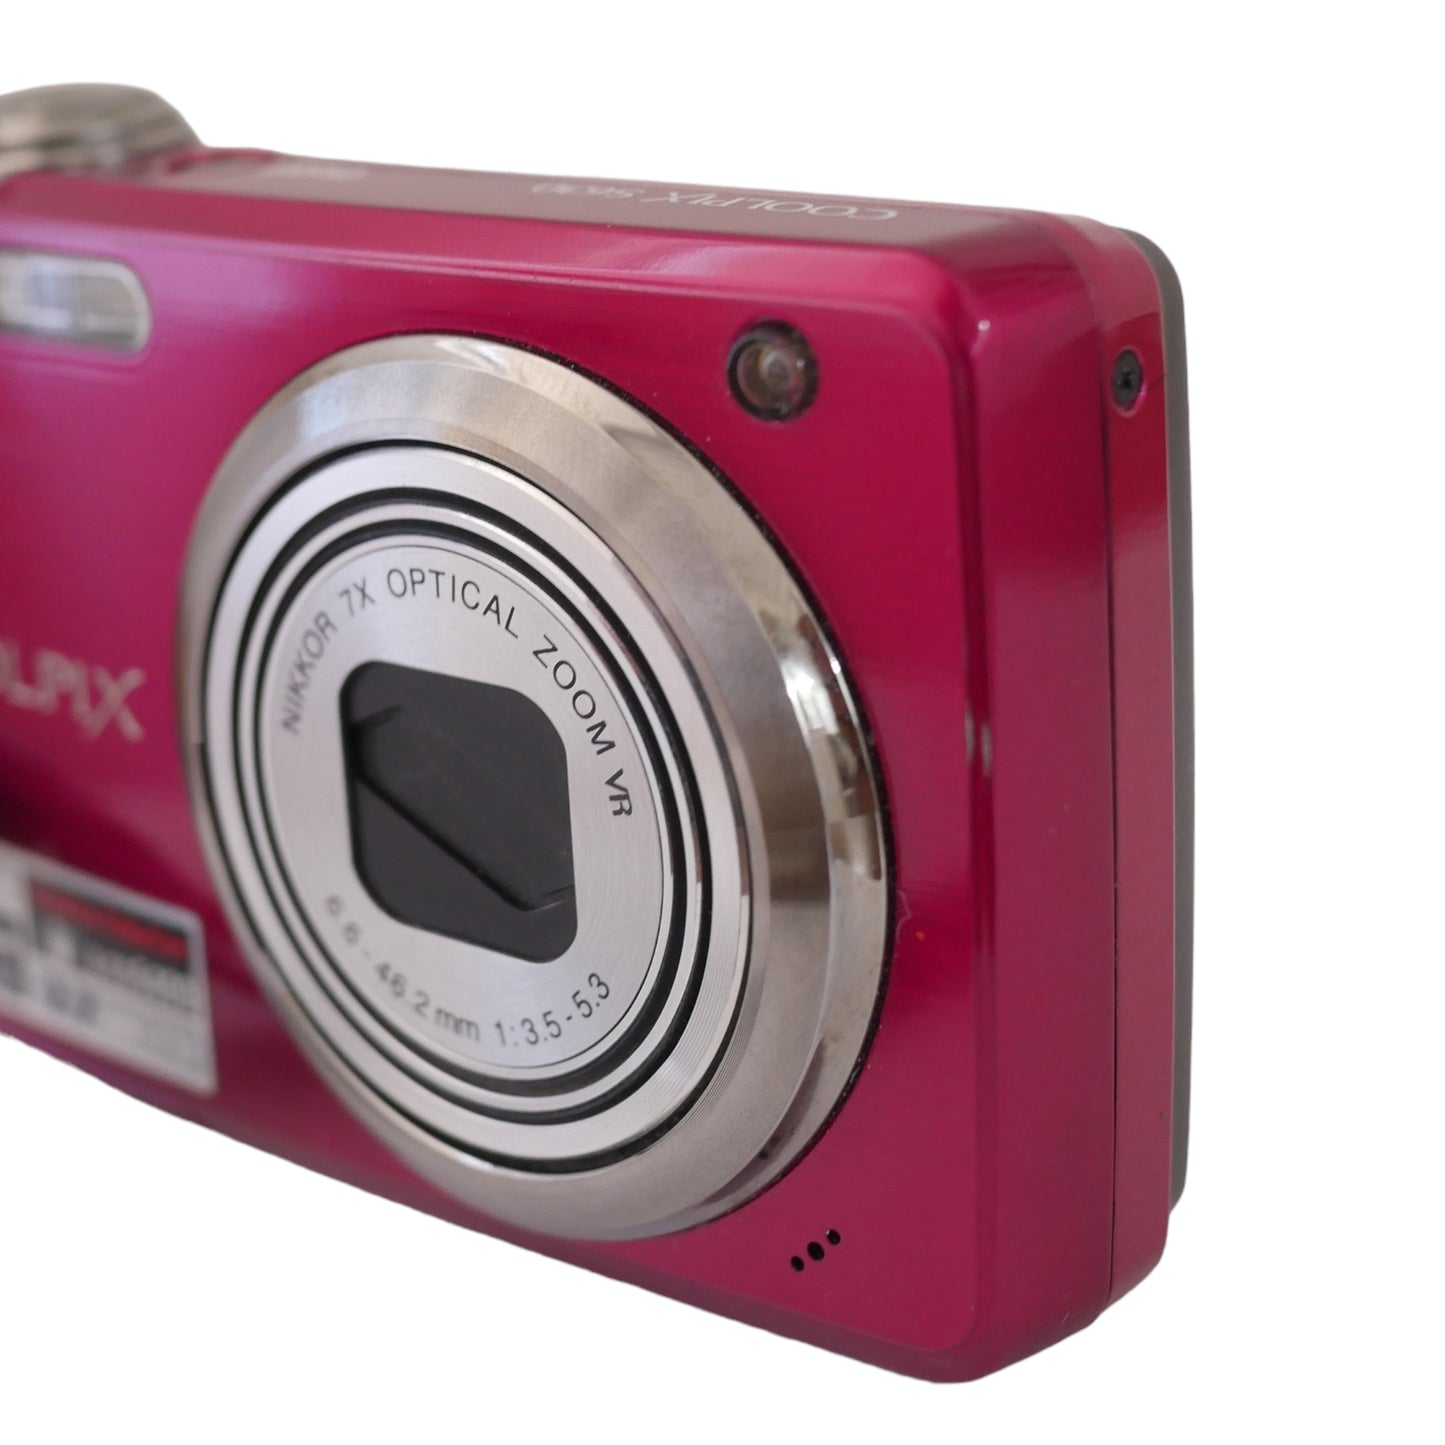 Nikon Coolpix S630 12 Megapixel Digital Camera